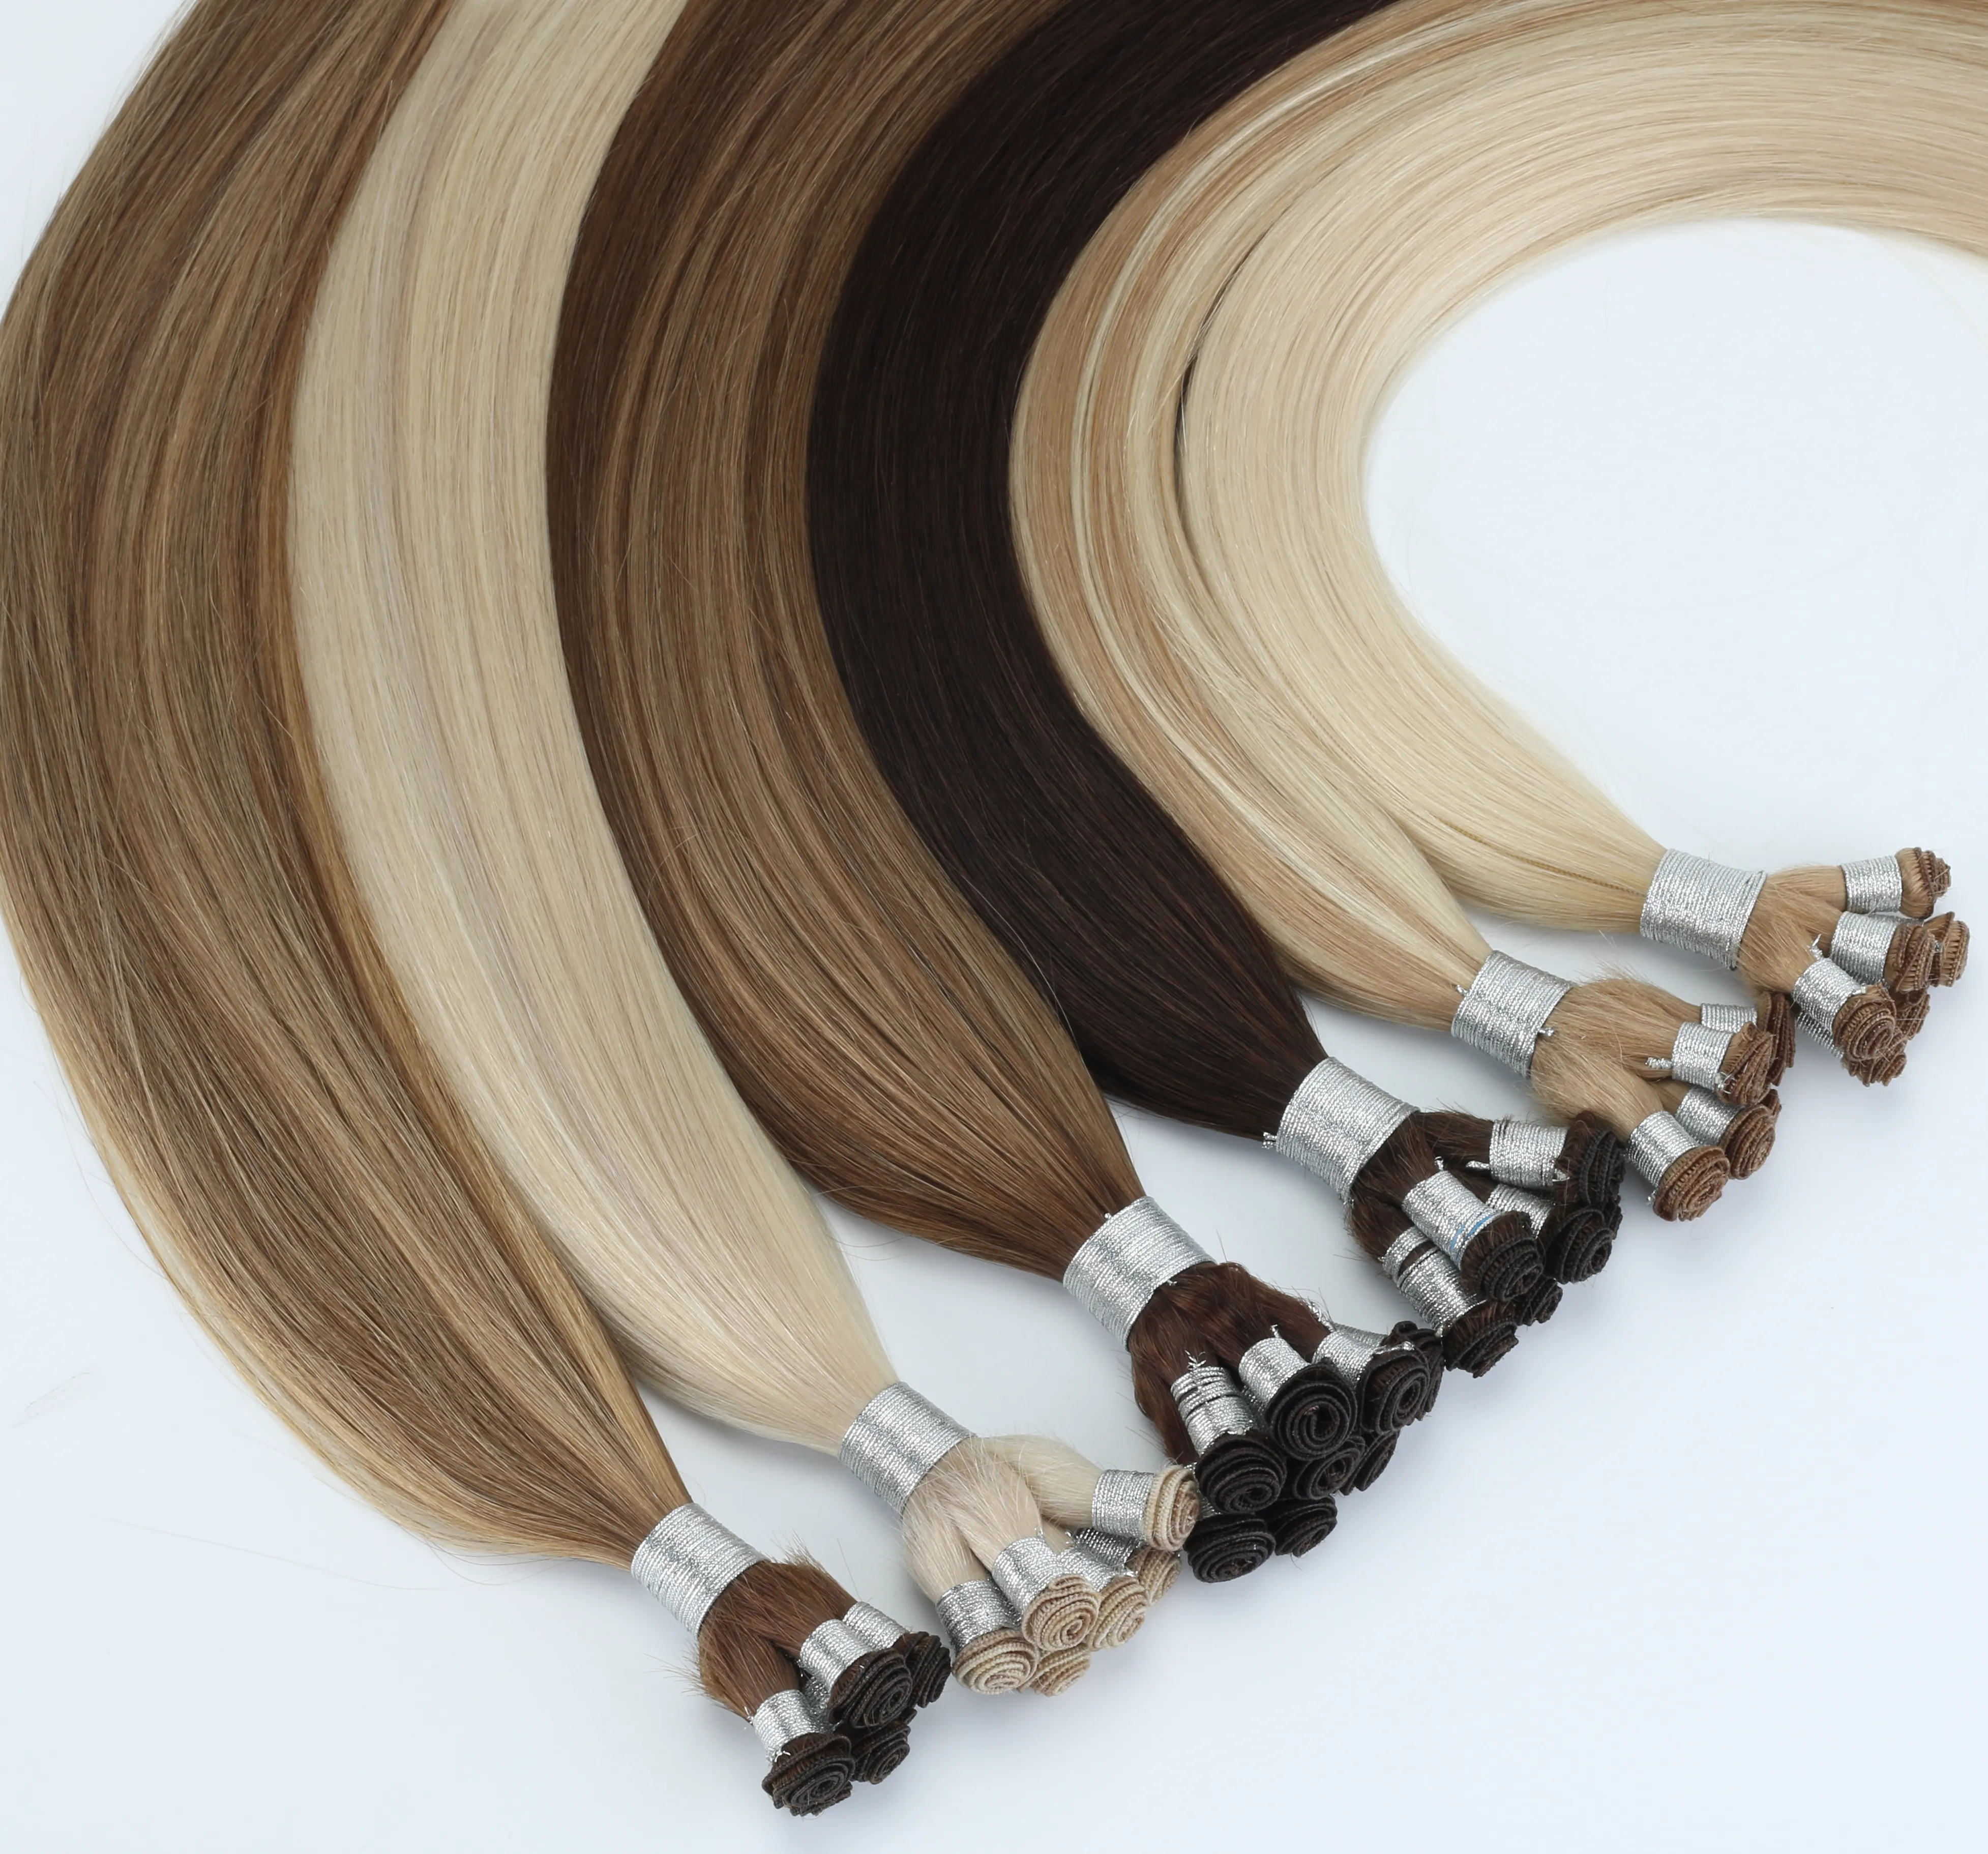 Русский пиломатериалы для волос выровнен волосы, связанные волосы наращивание уточнения волос 8 штурмов / 100 граммов